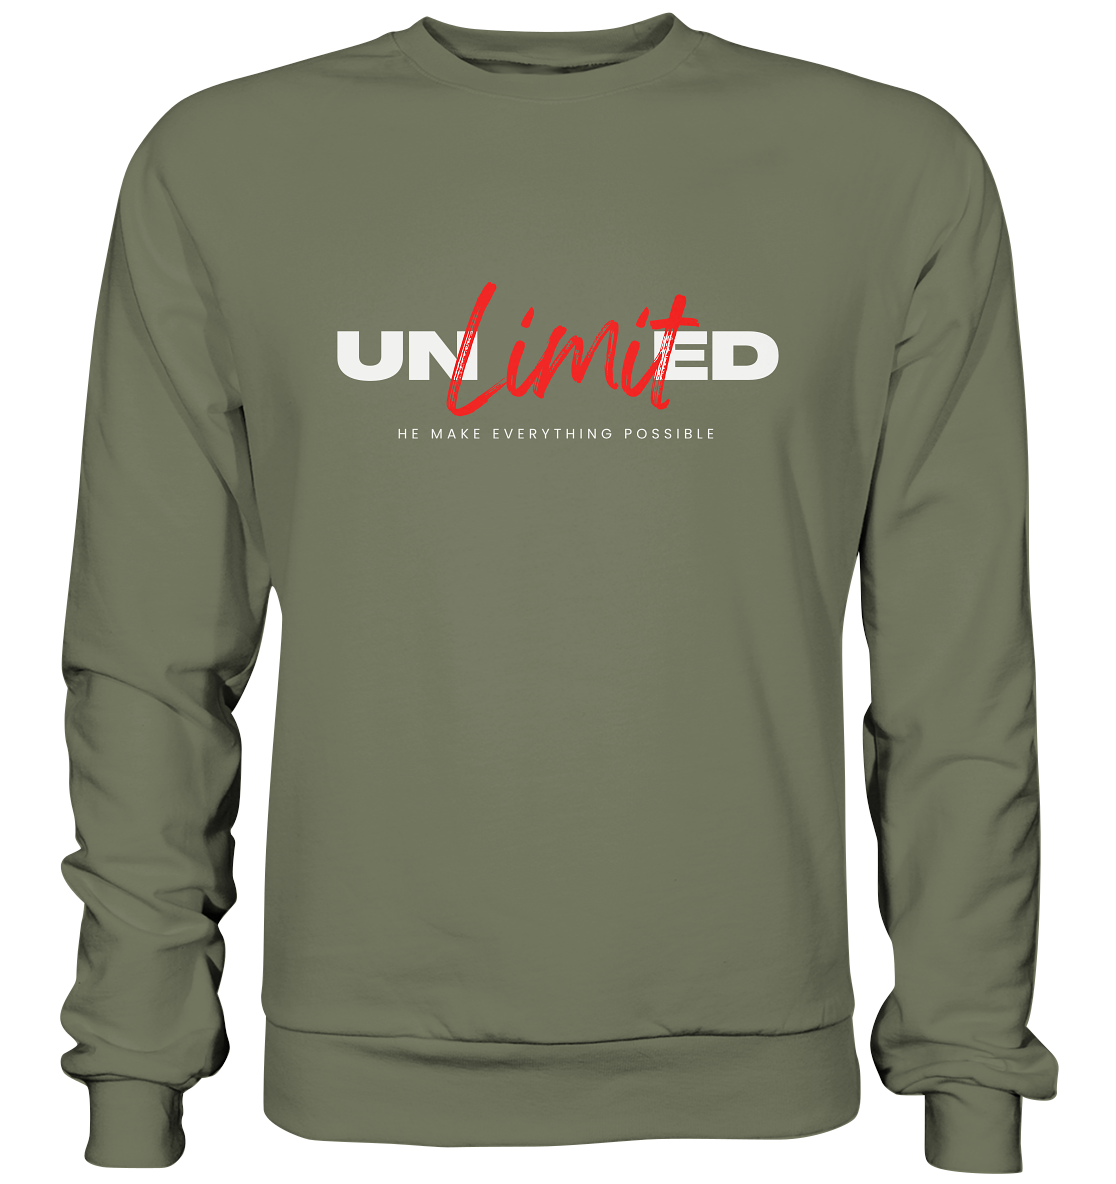 Unbegrenzte Möglichkeiten "Unlimited" - Premium Sweatshirt